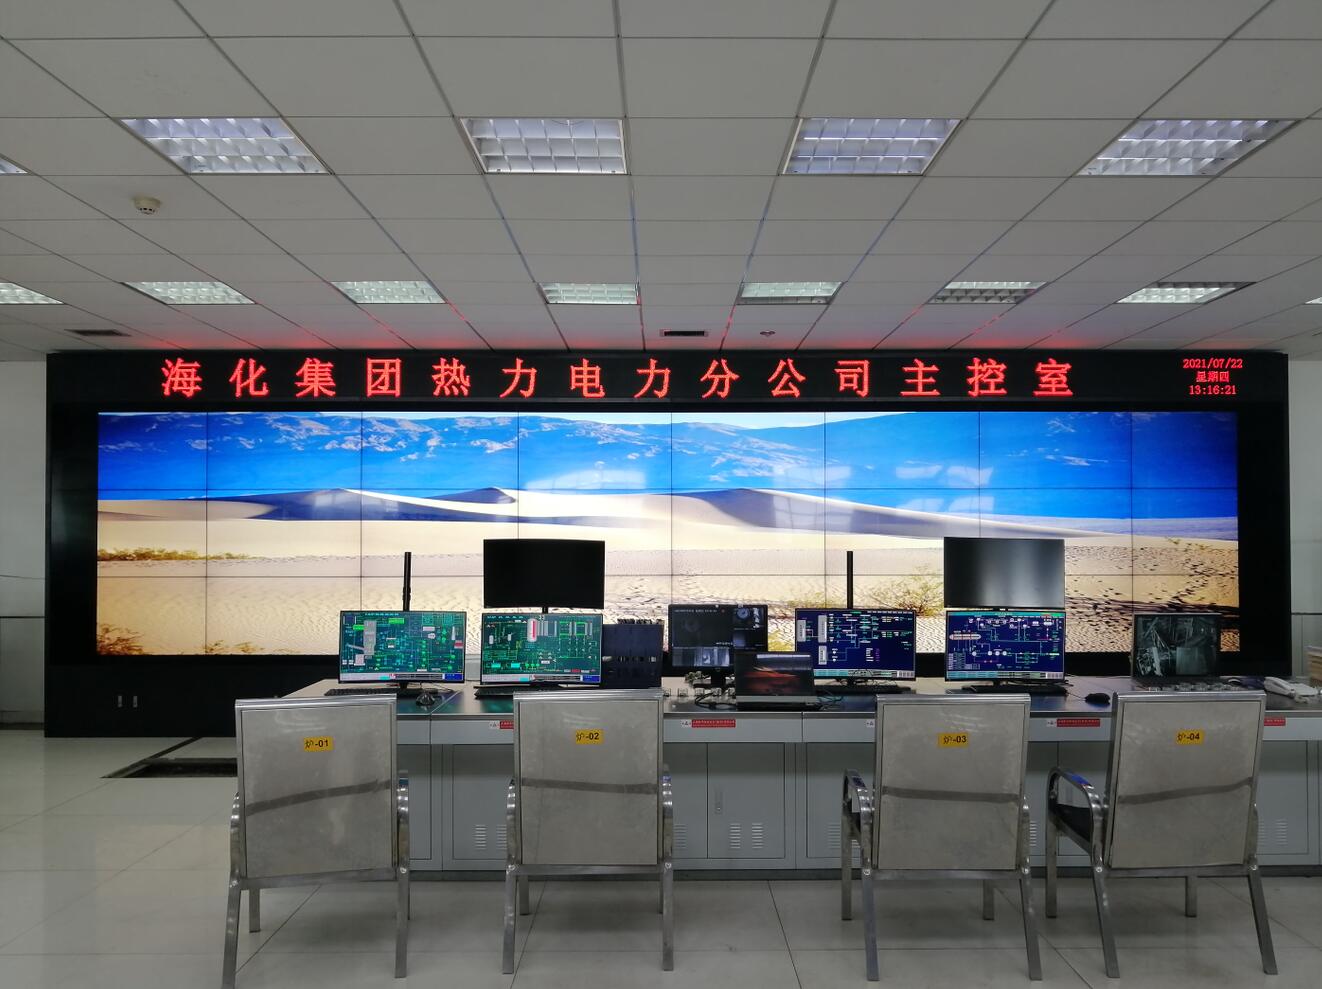 山东潍坊海化集团热力电力分公司24块液晶大屏完工